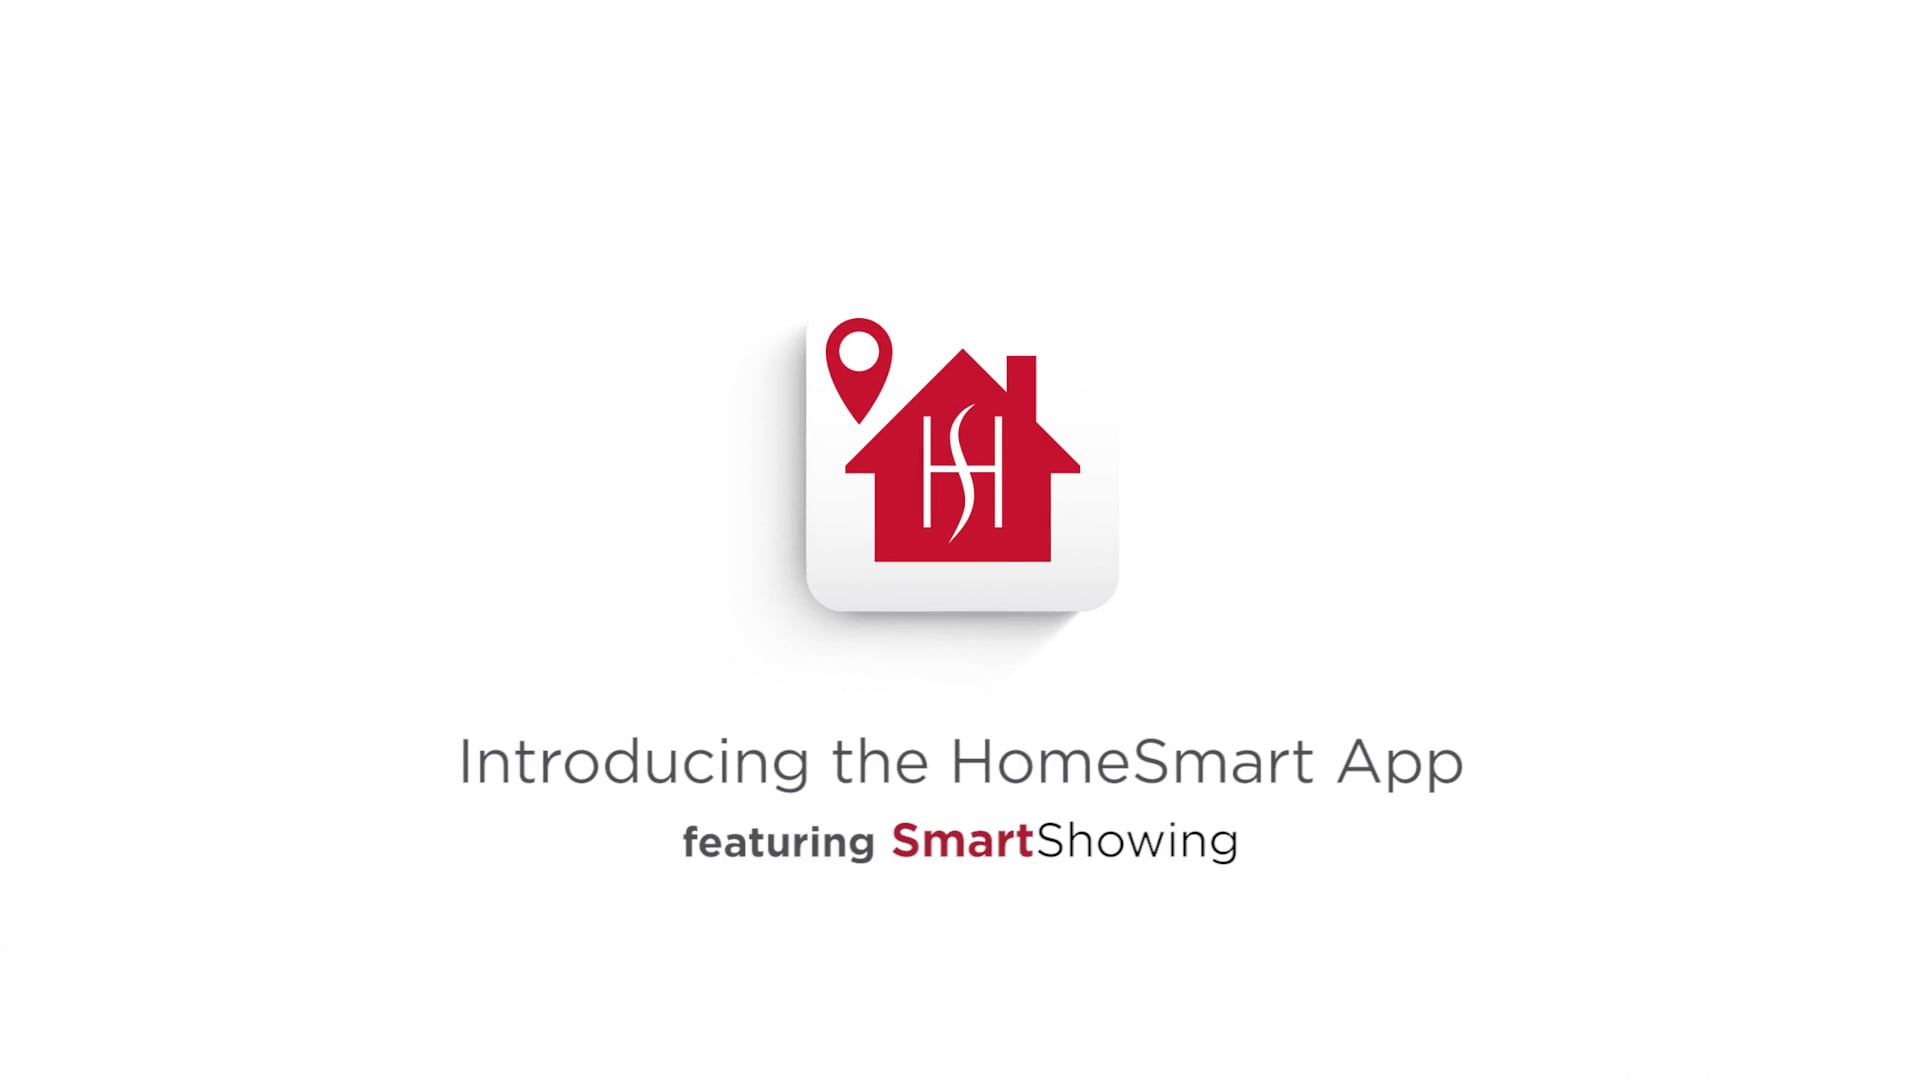 HomeSmart's Mobile App